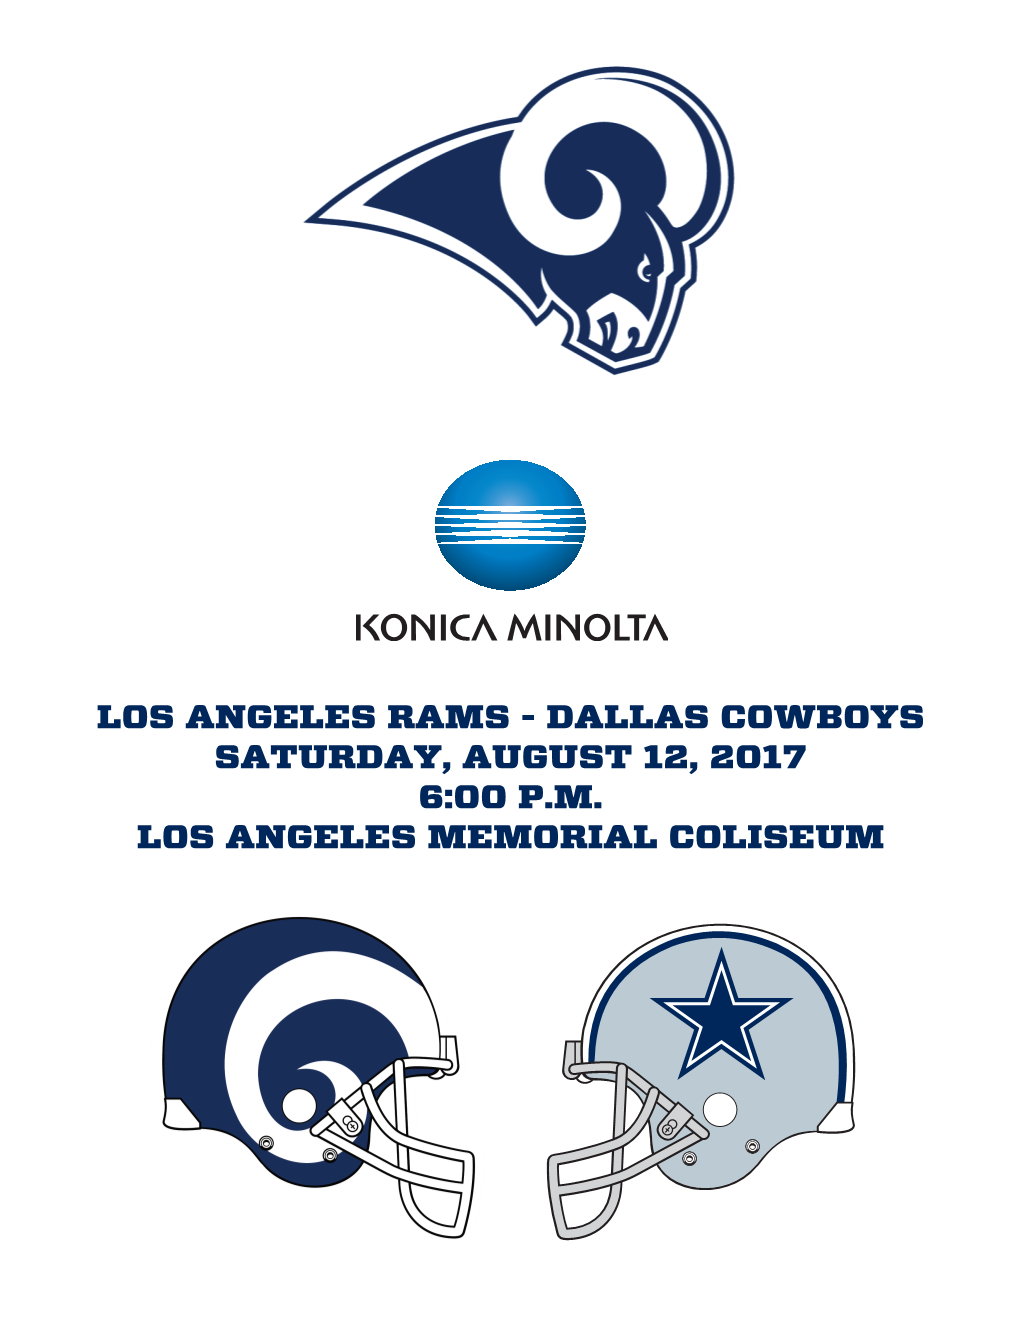 Los Angeles Rams - Dallas Cowboys Saturday, August 12, 2017 6:00 P.M